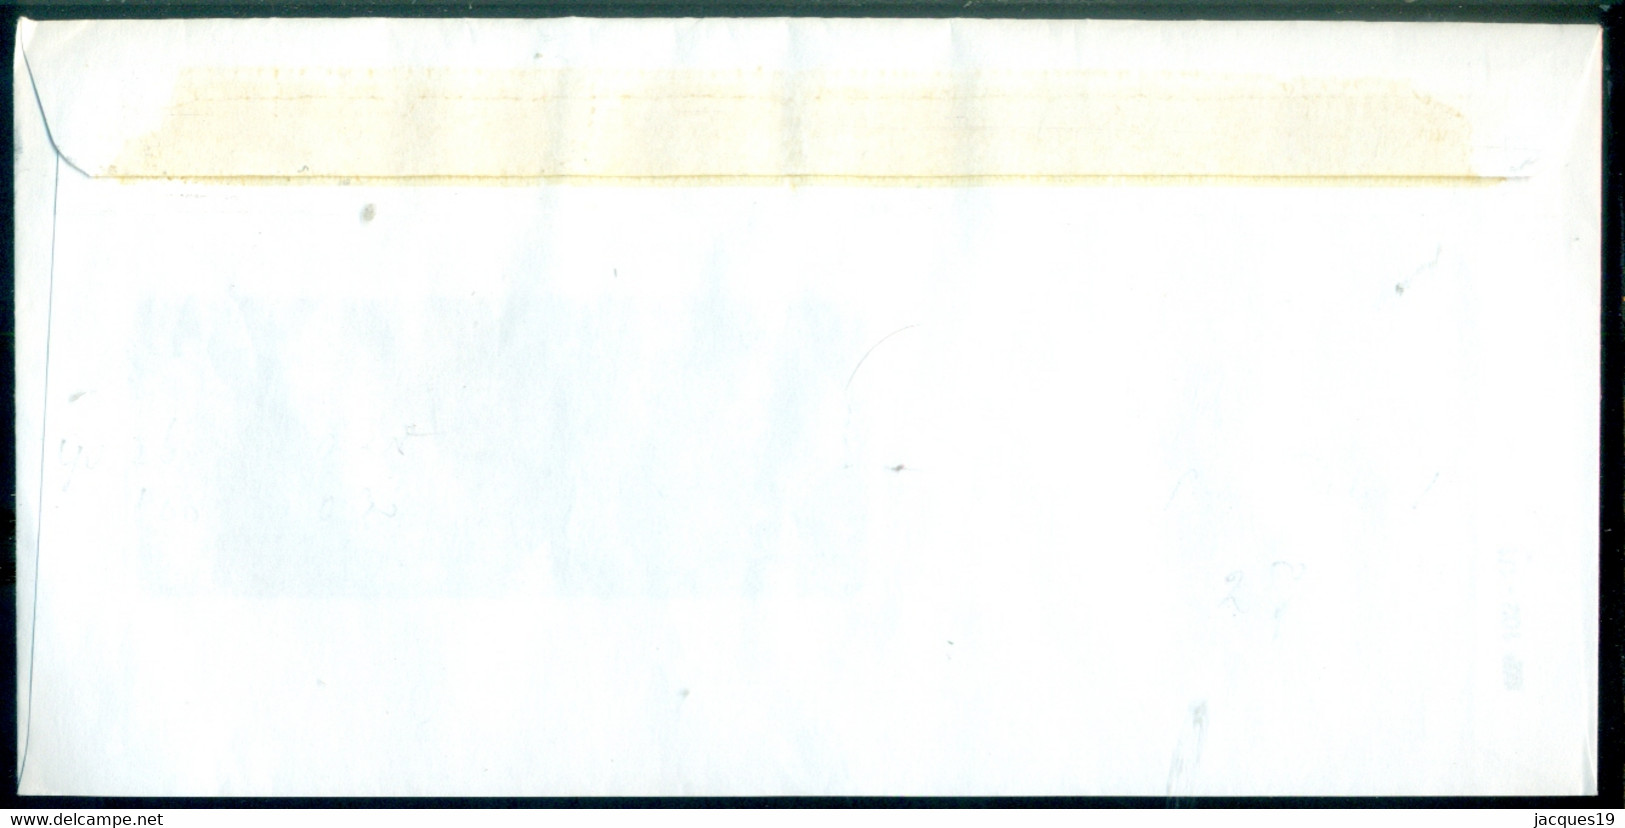 Slowakei 1997 Umschlag  Mi 199 Und 304 - Briefe U. Dokumente